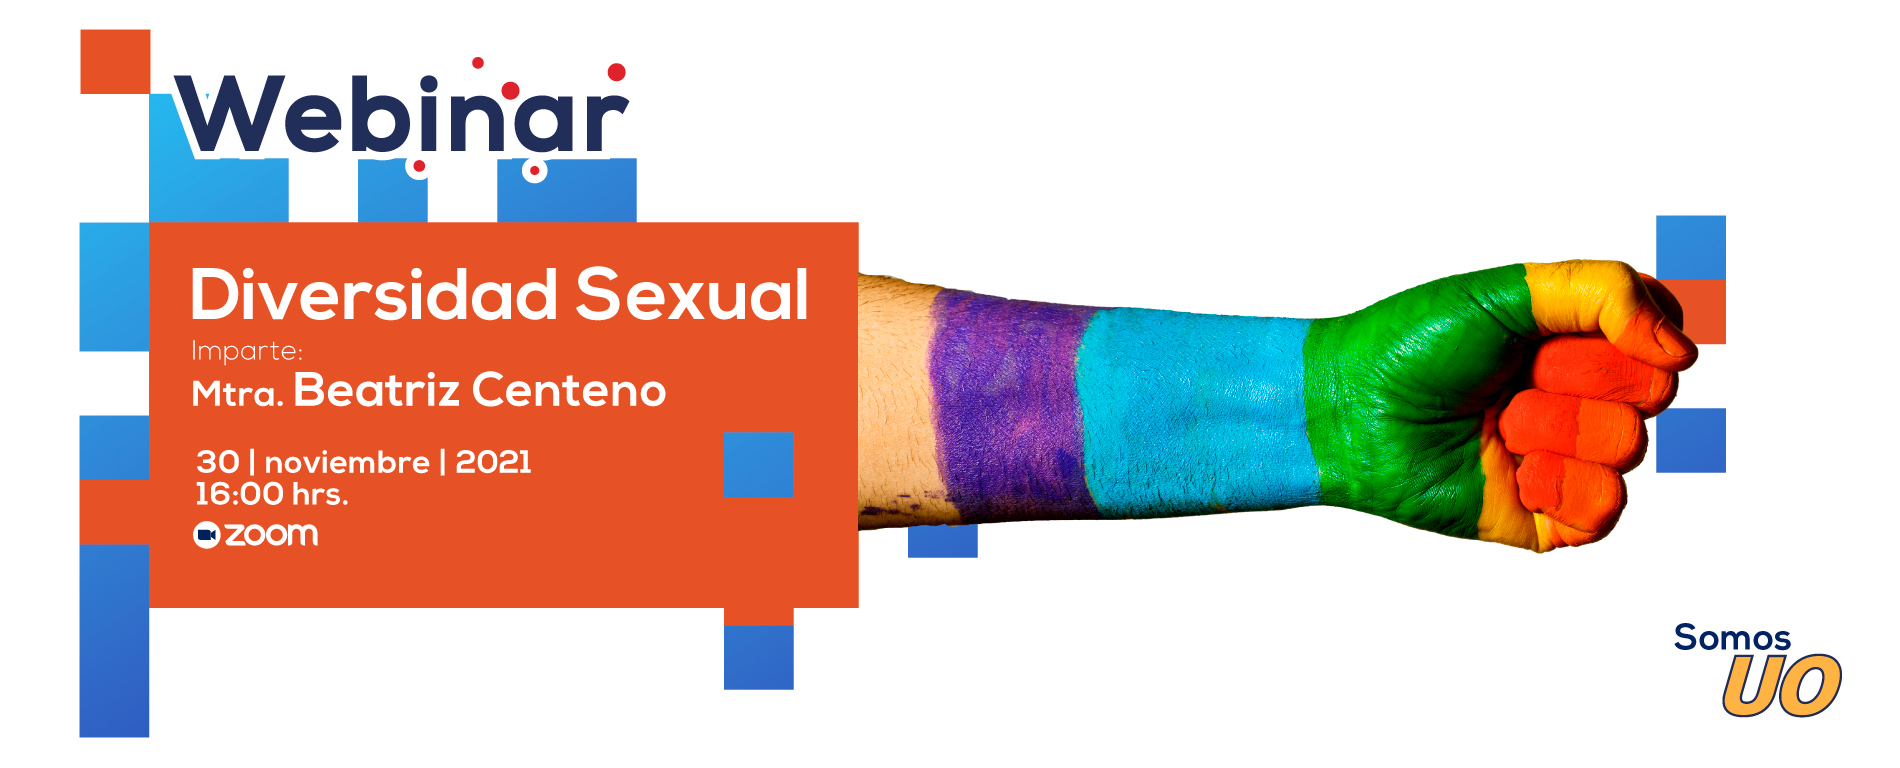 Webinar | Diversidad Sexual